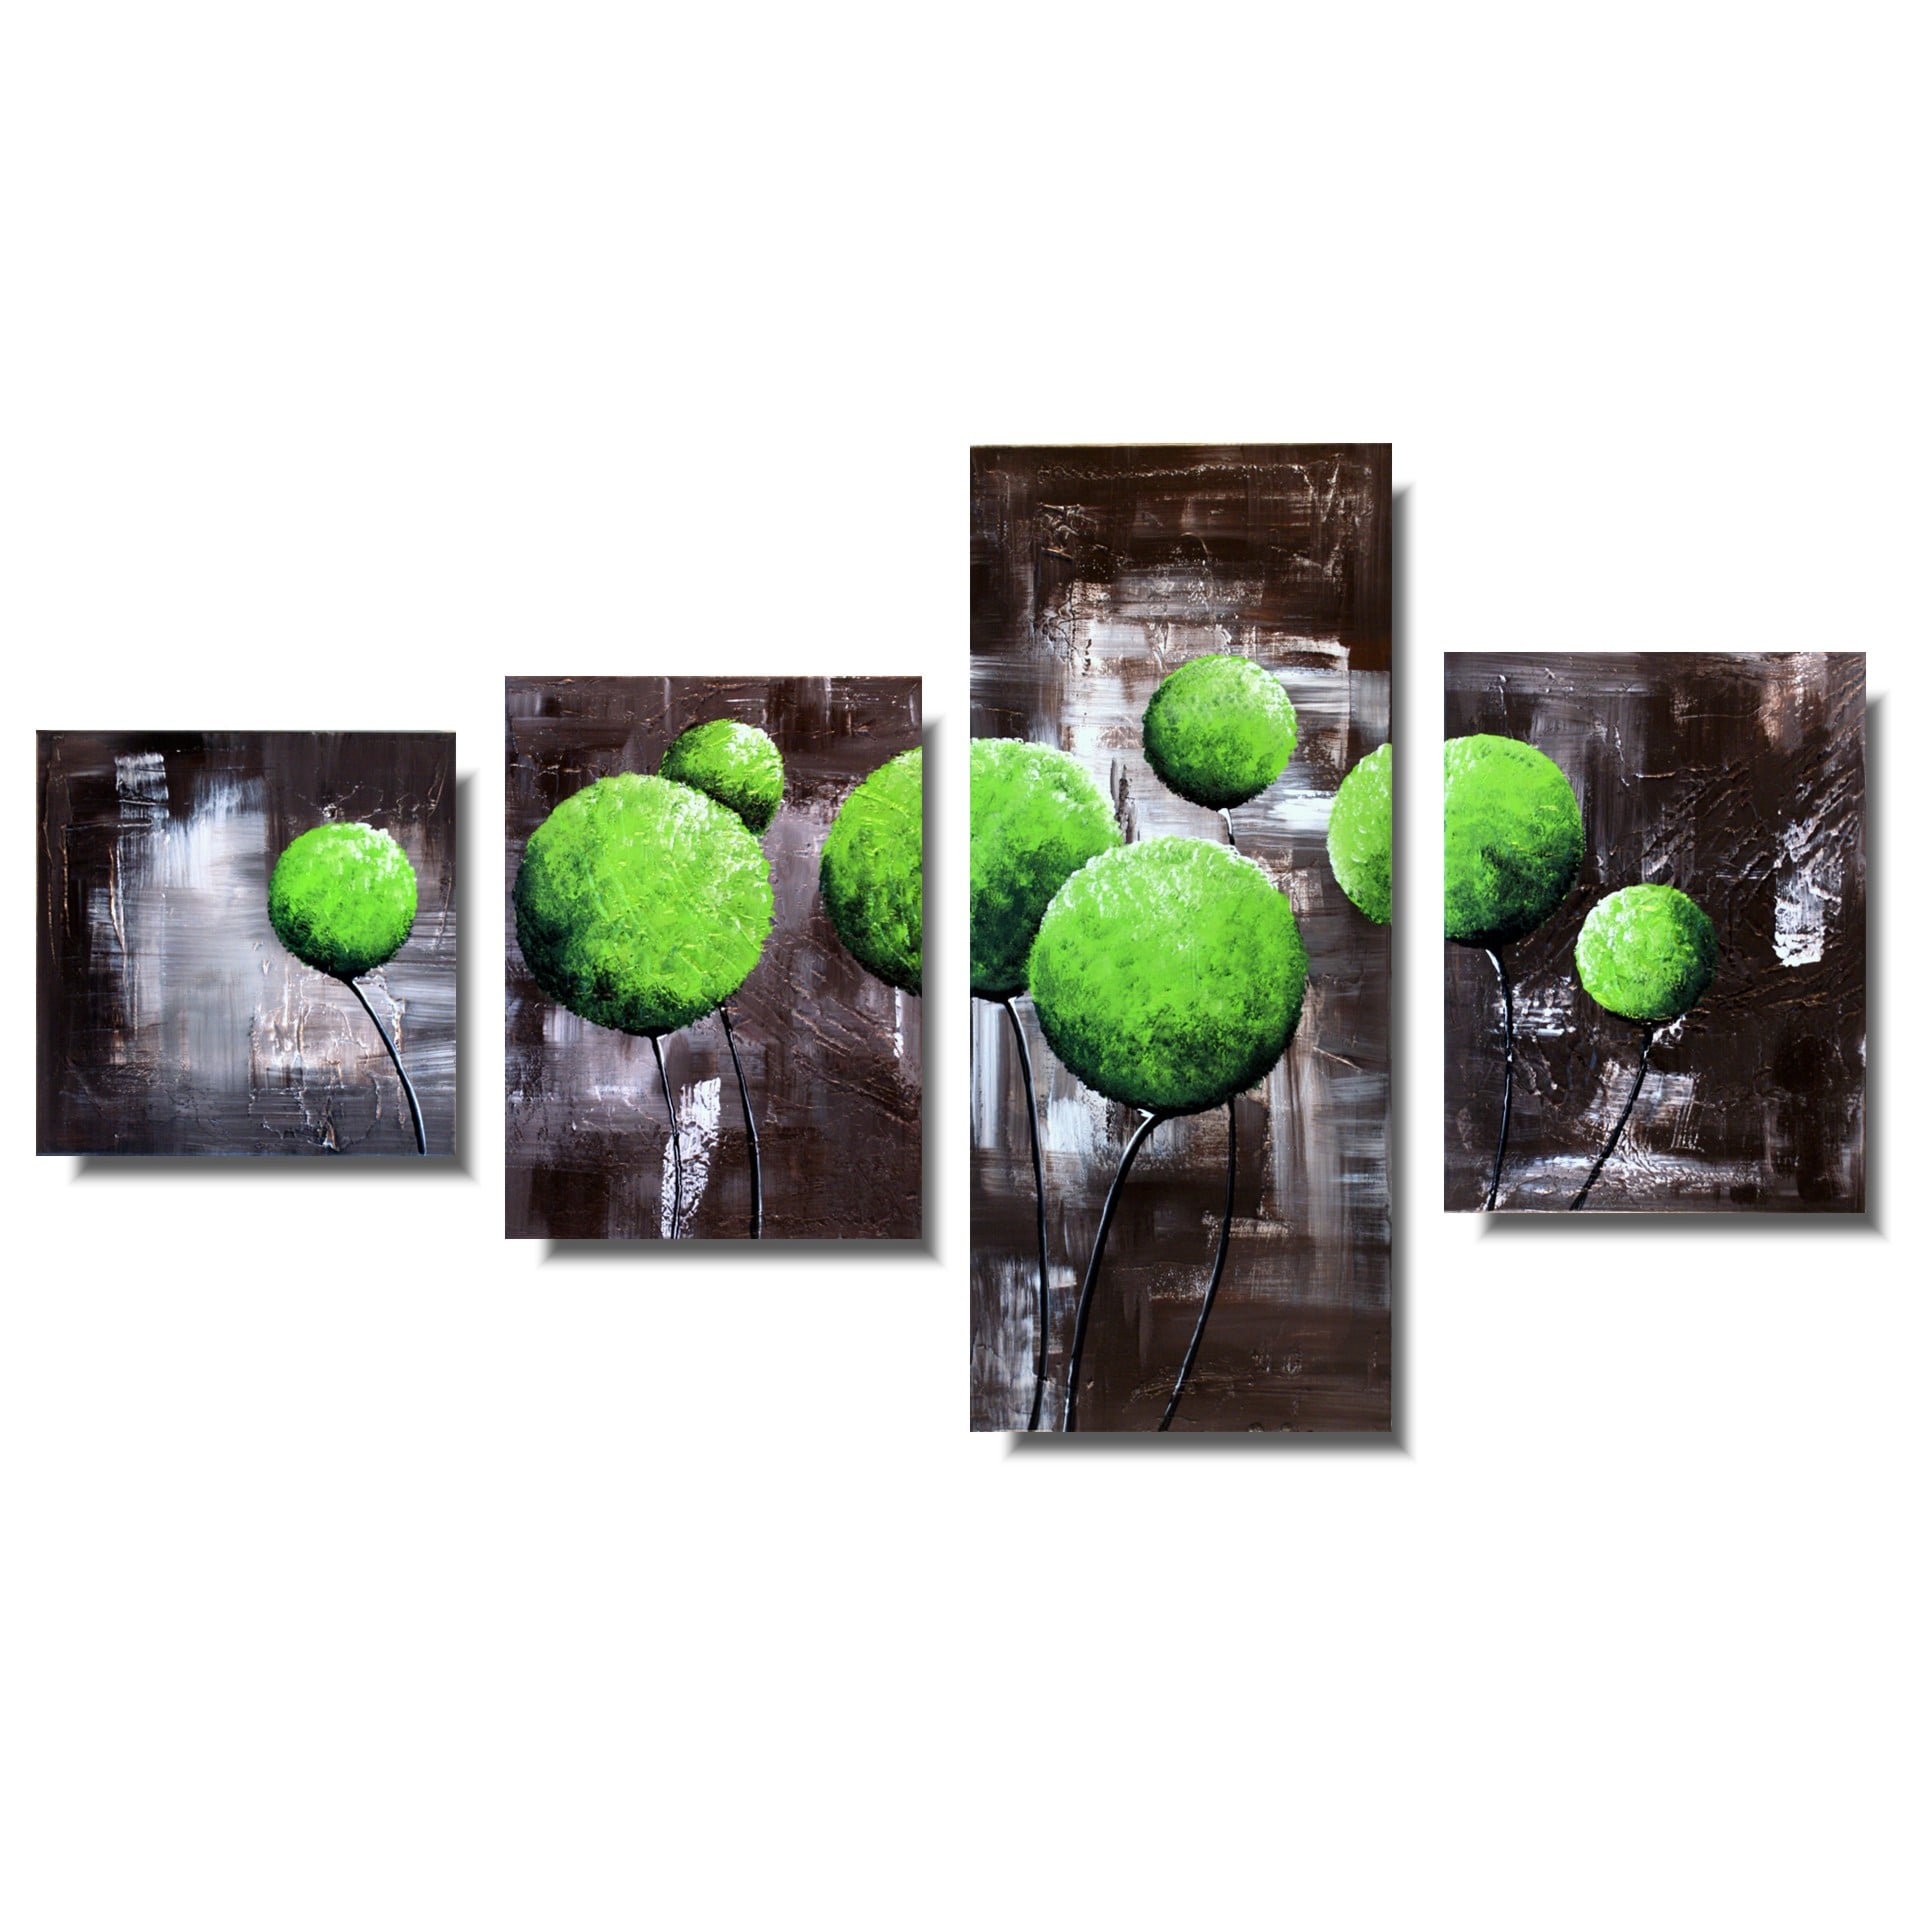 Obraz tryptyk obraz dmuchawce kwiaty soczyste zielone kule